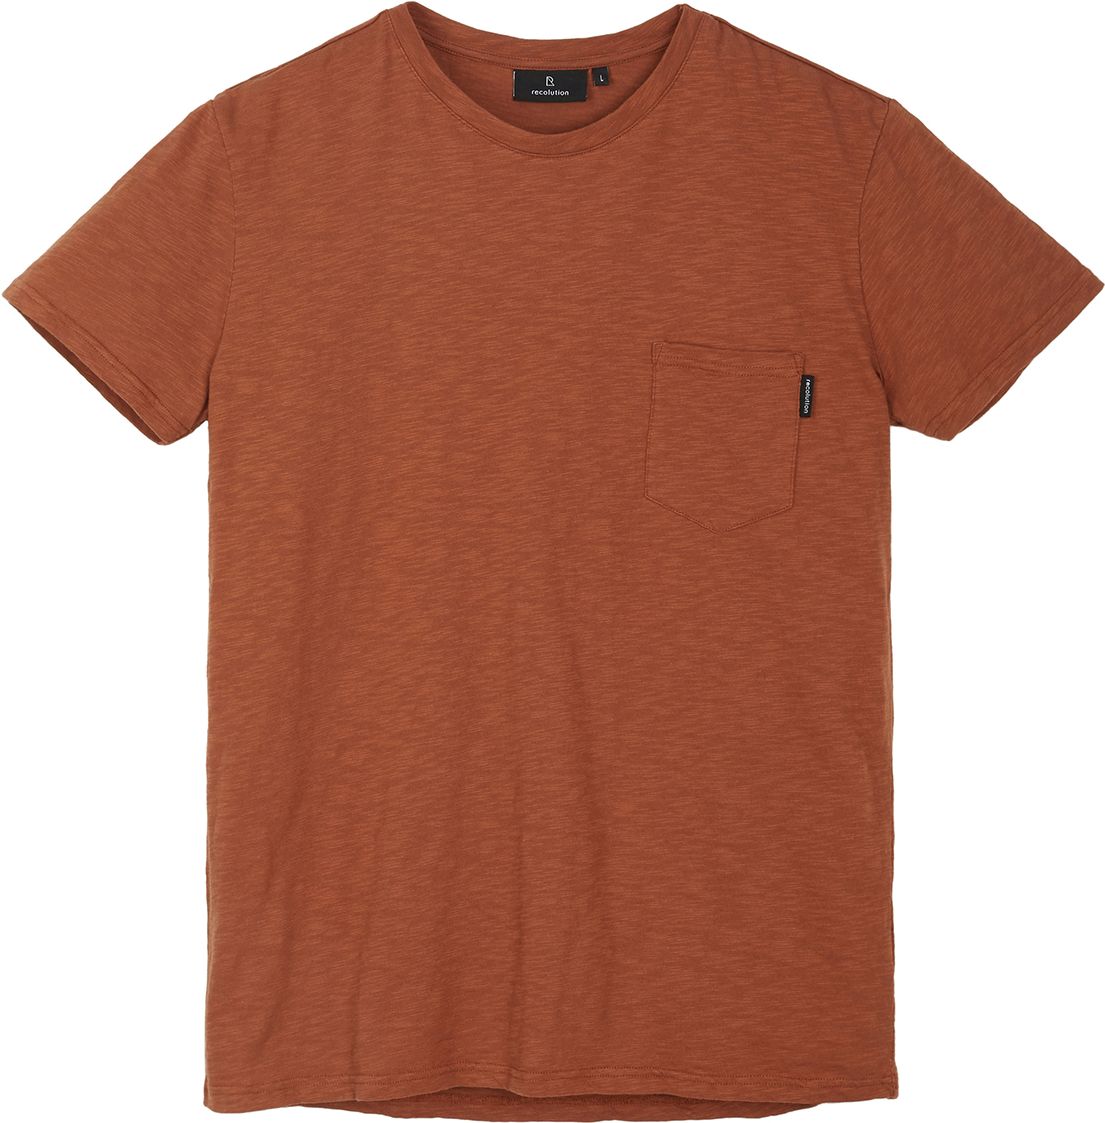 Herren-Shirt PALM dark orange